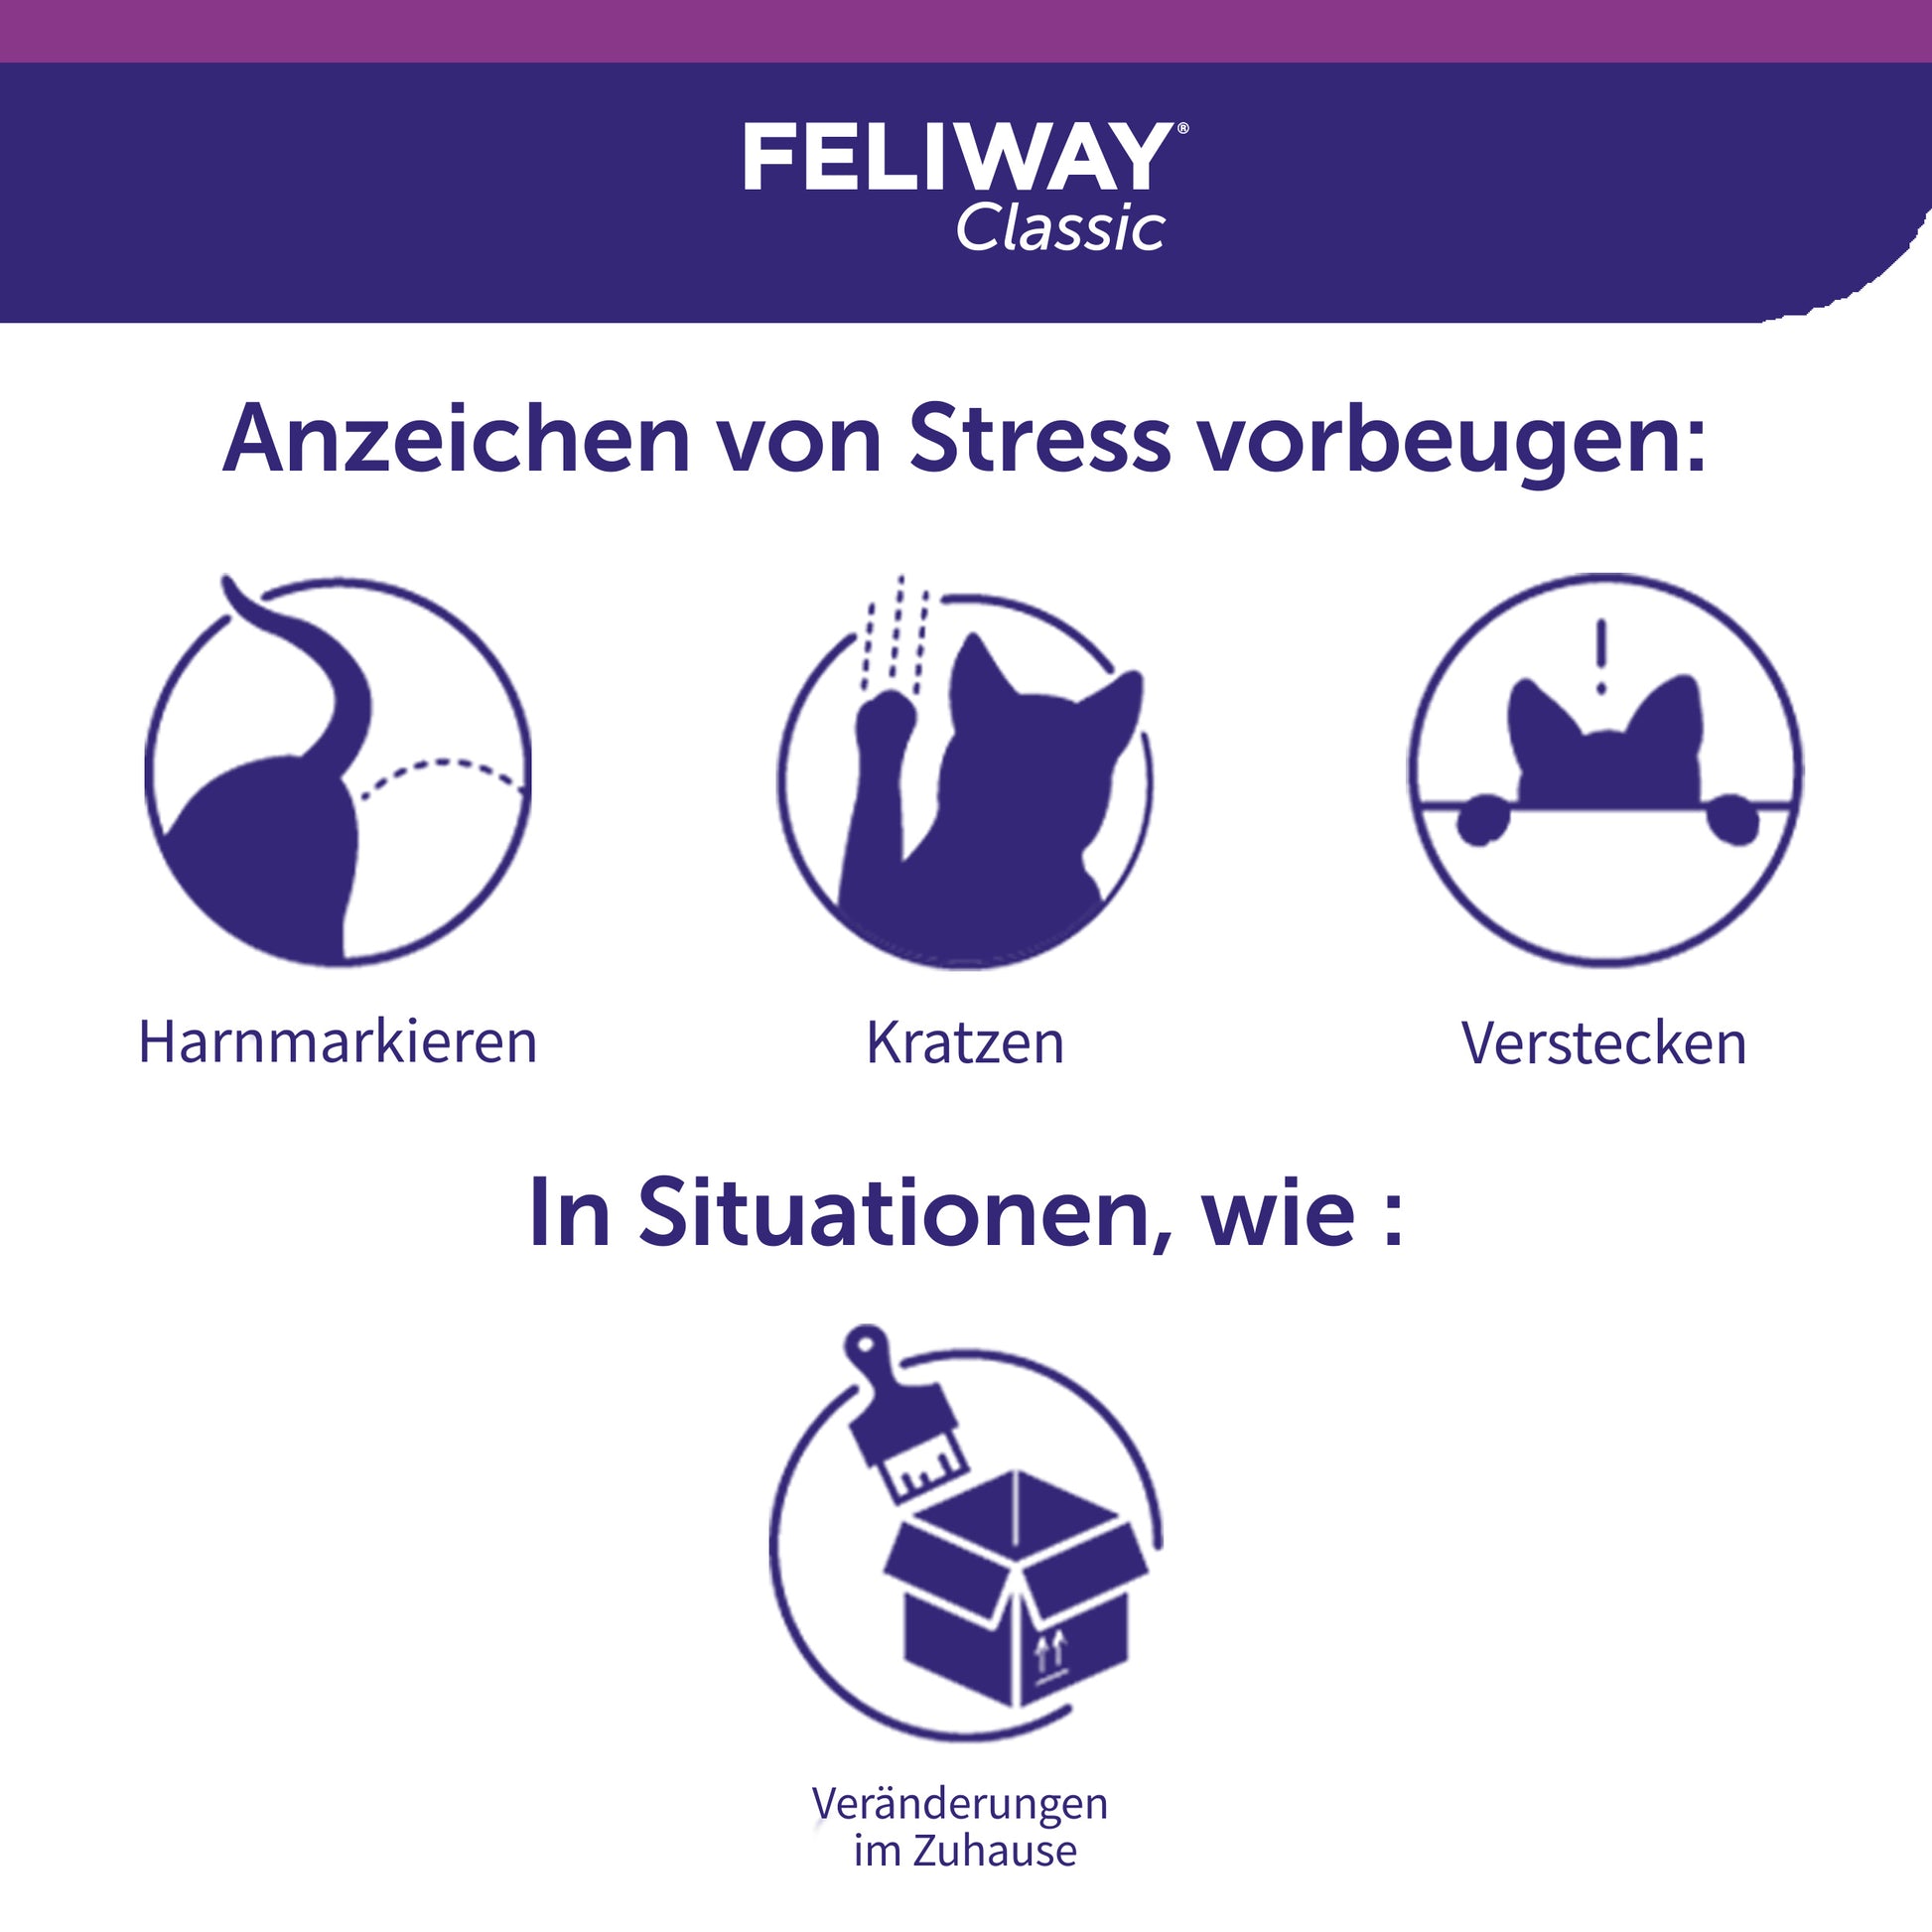 FELIWAY Classic beugt Anzeichen von Stress vor